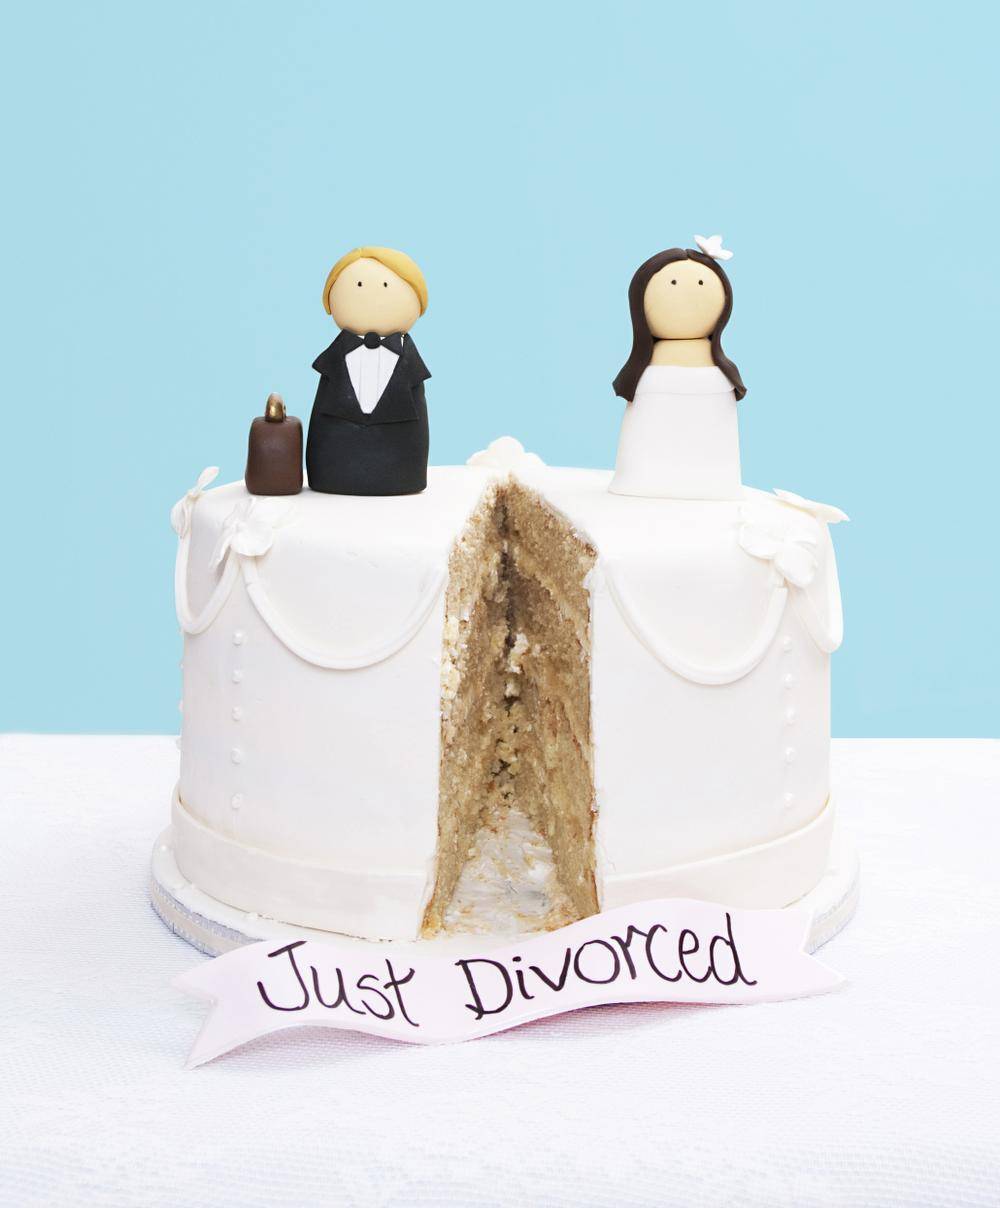 Your Wedding Dress After a Divorce - 10 Ideas 